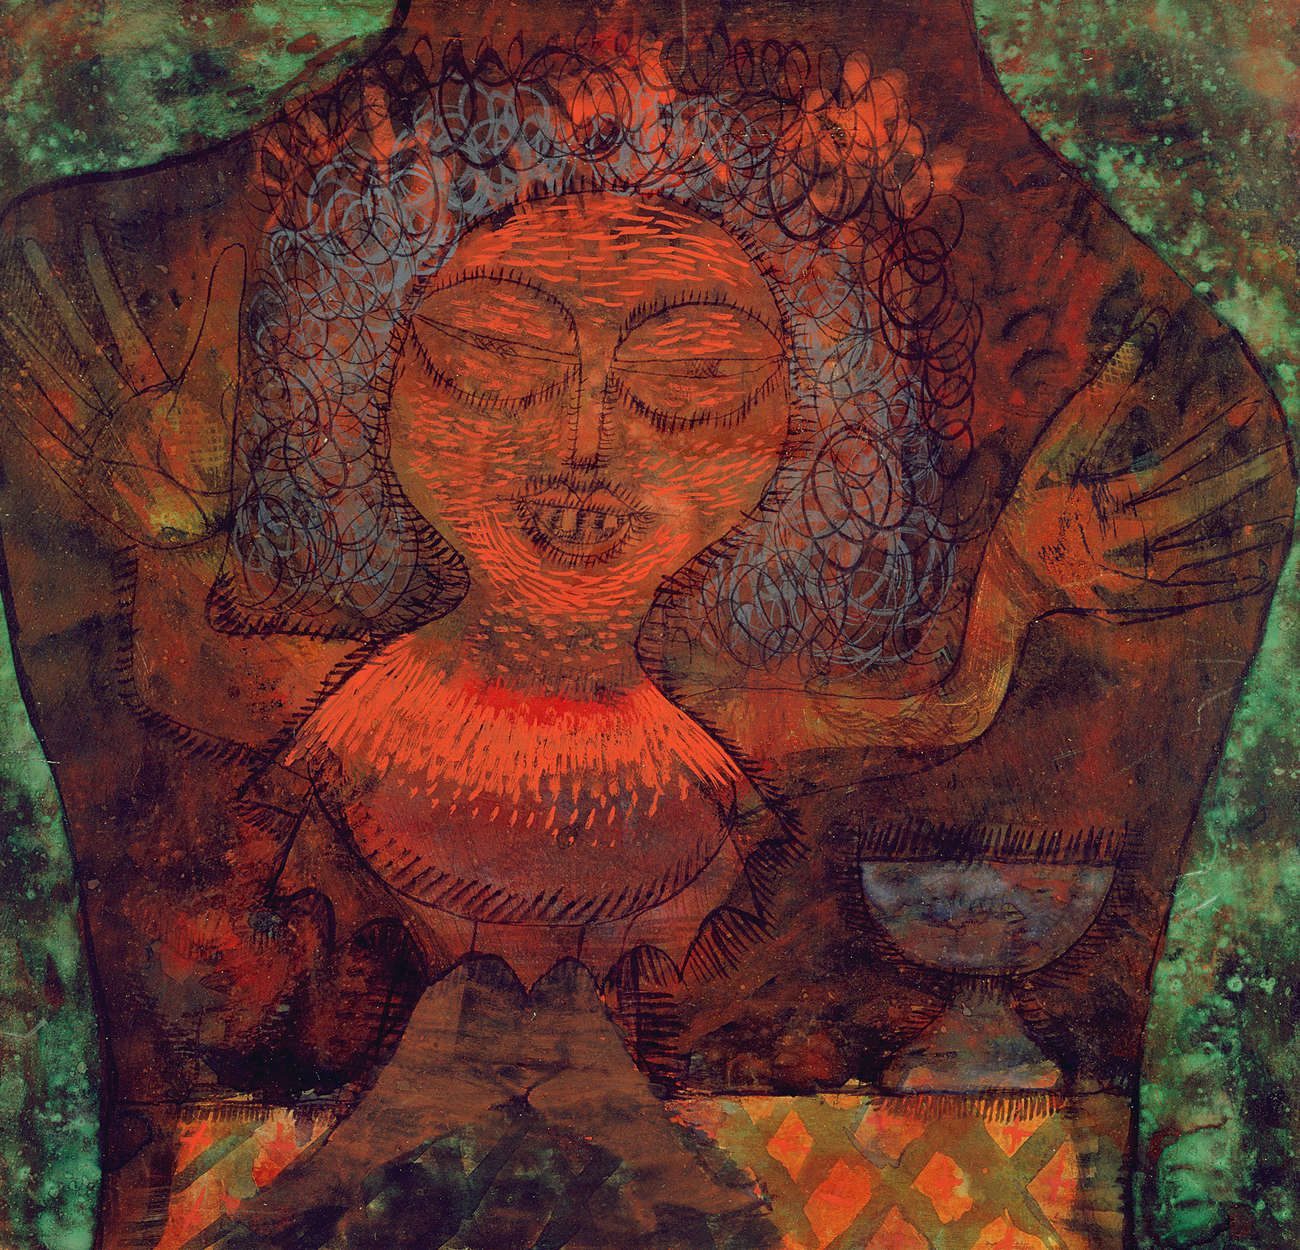             Mural "Prophet" de Paul Klee
        